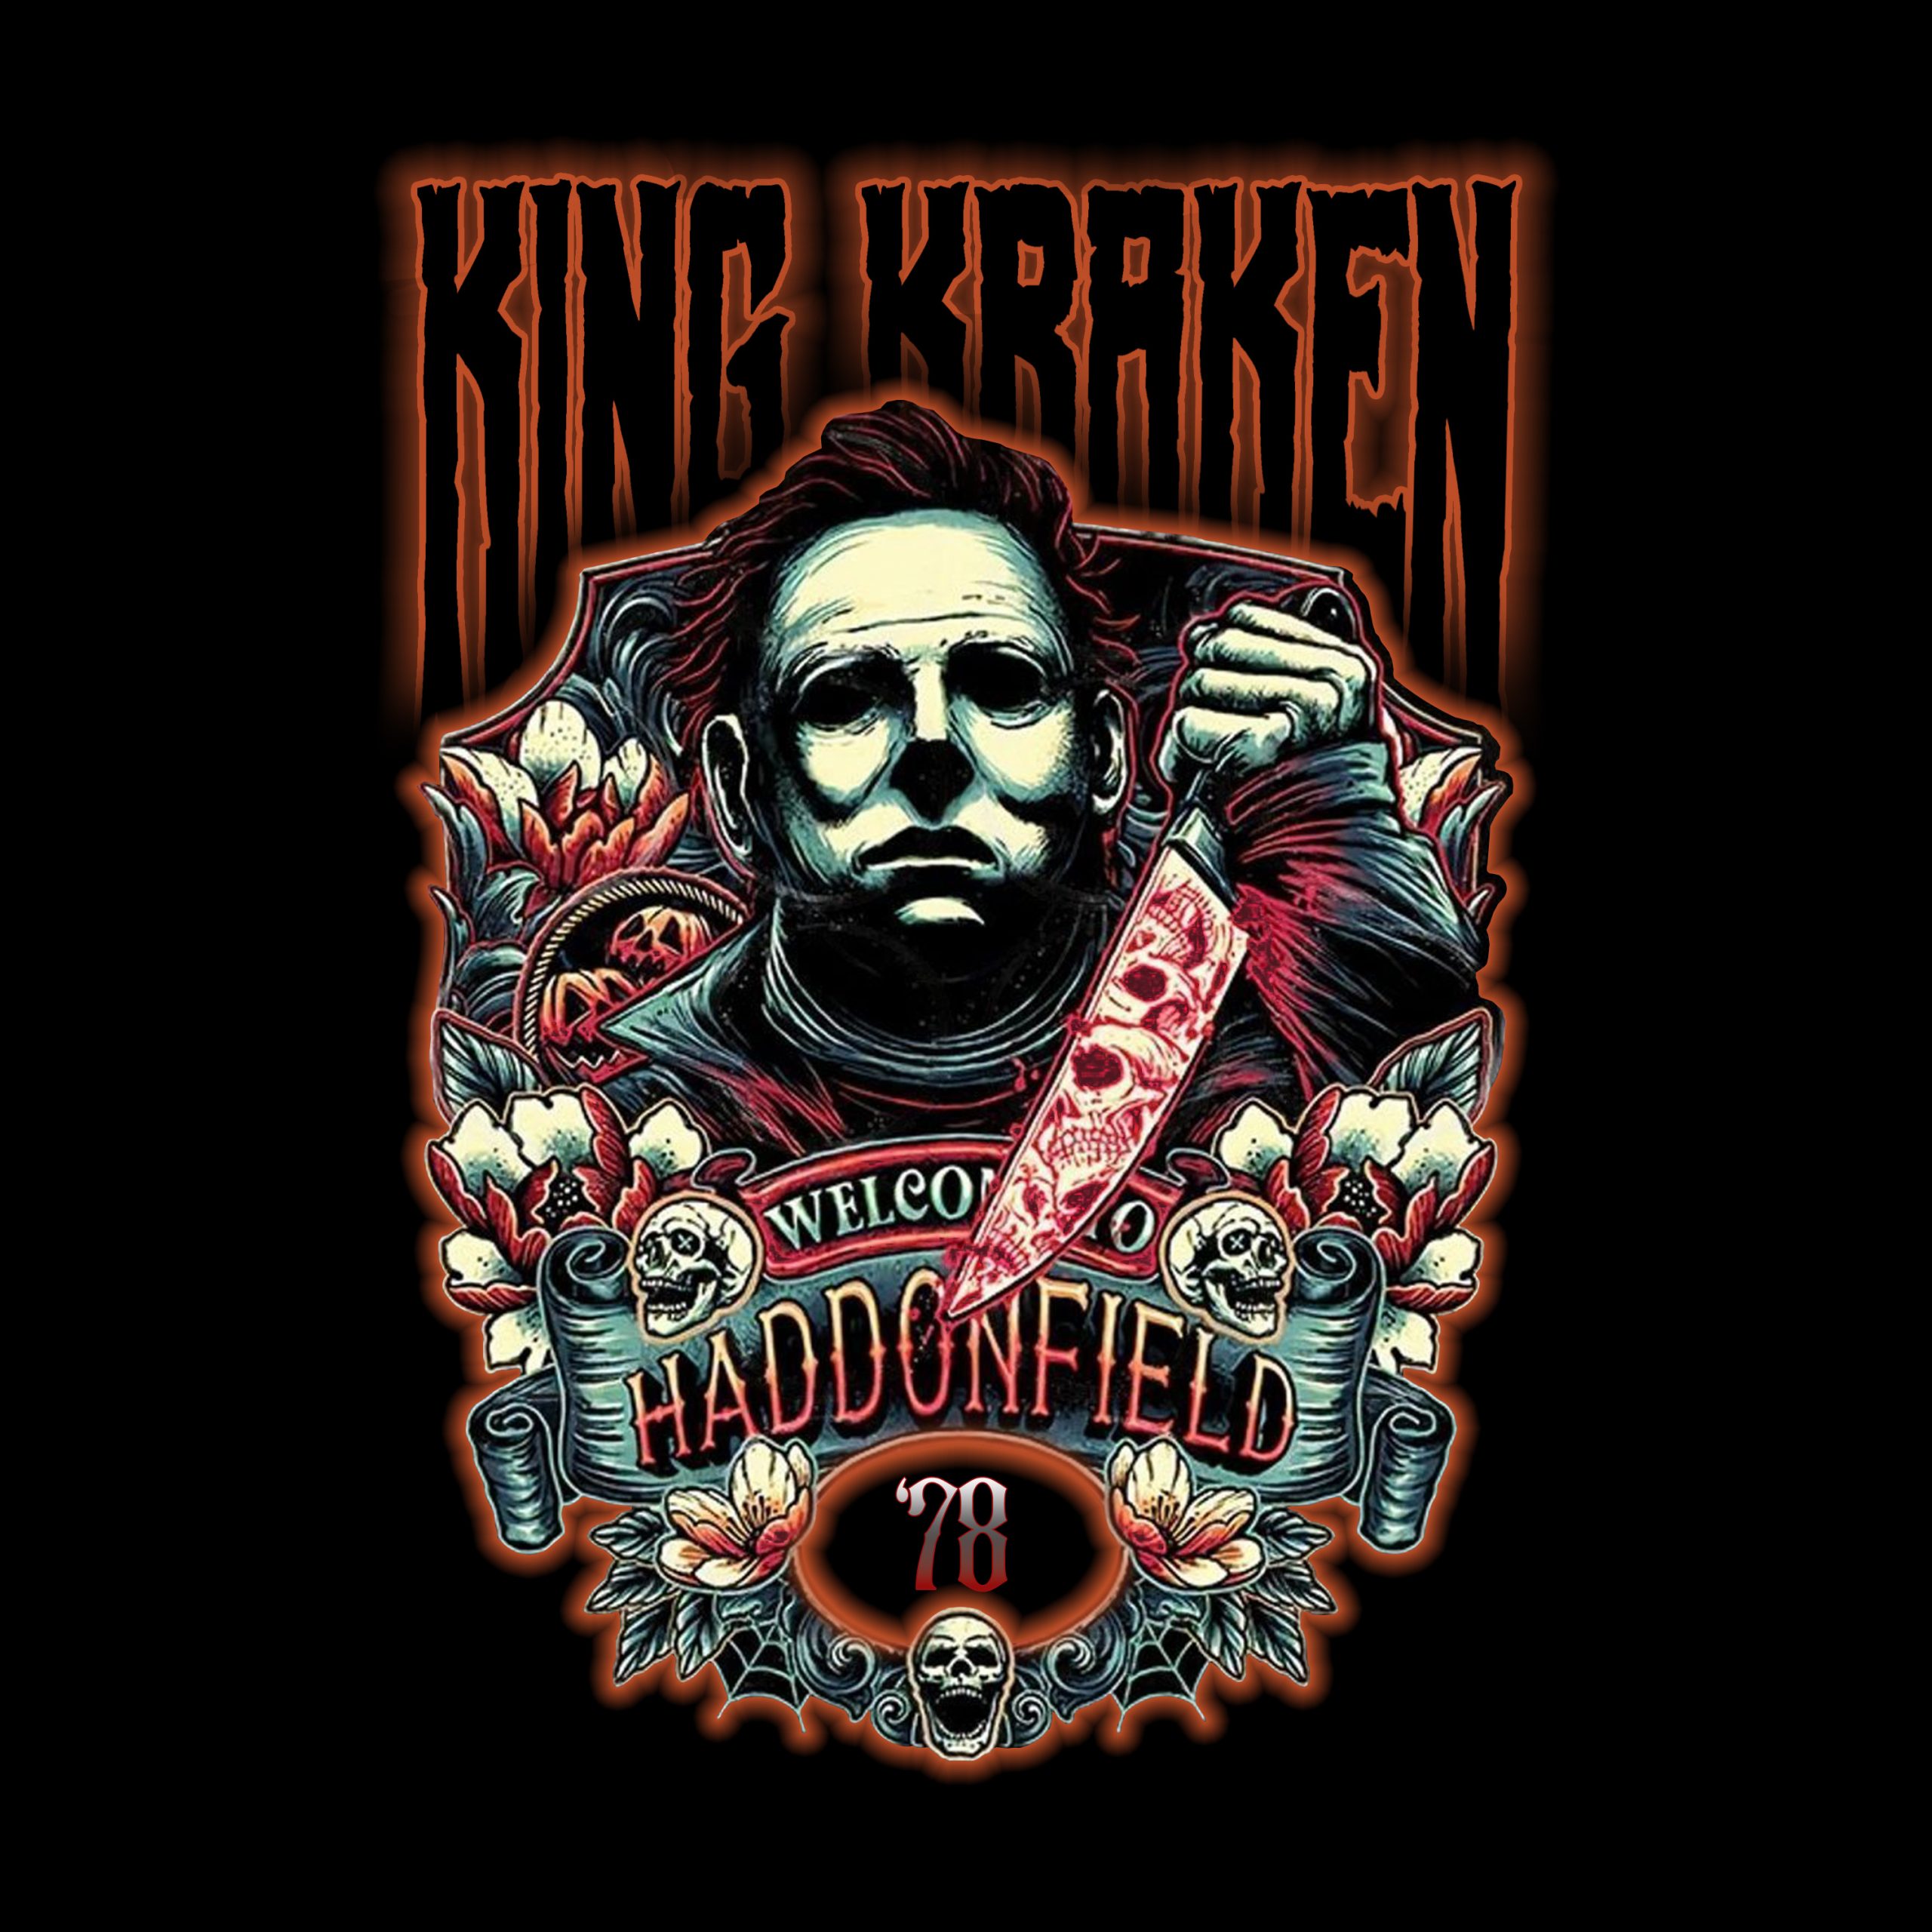 King Kraken releases Halloween inspired video 'Haddonfield '78 